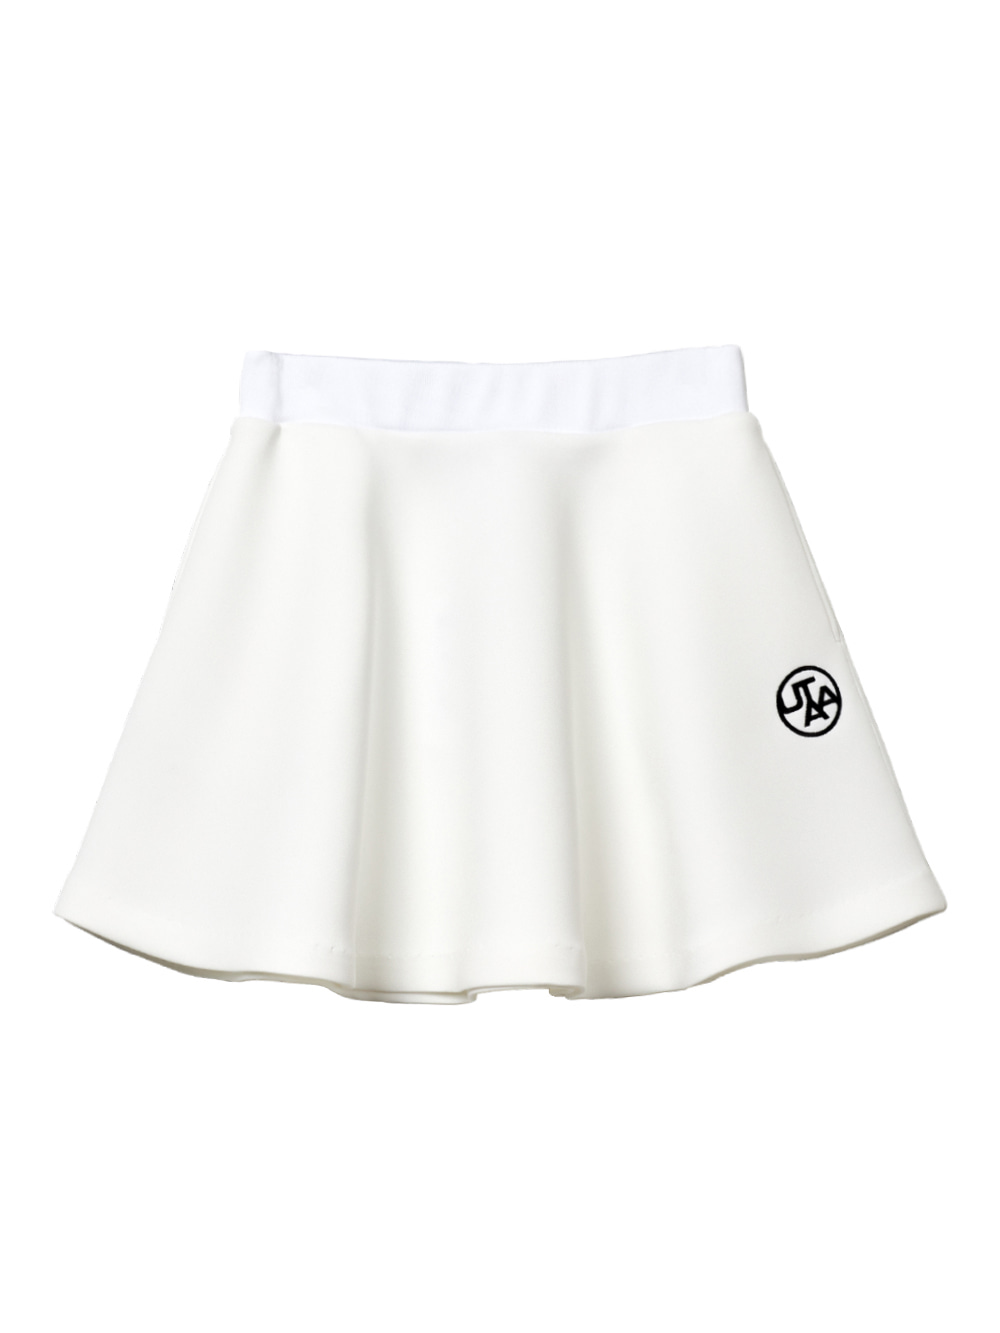 UTAA Ireland Neoprene Skirt : White (UA3SSF706WH)